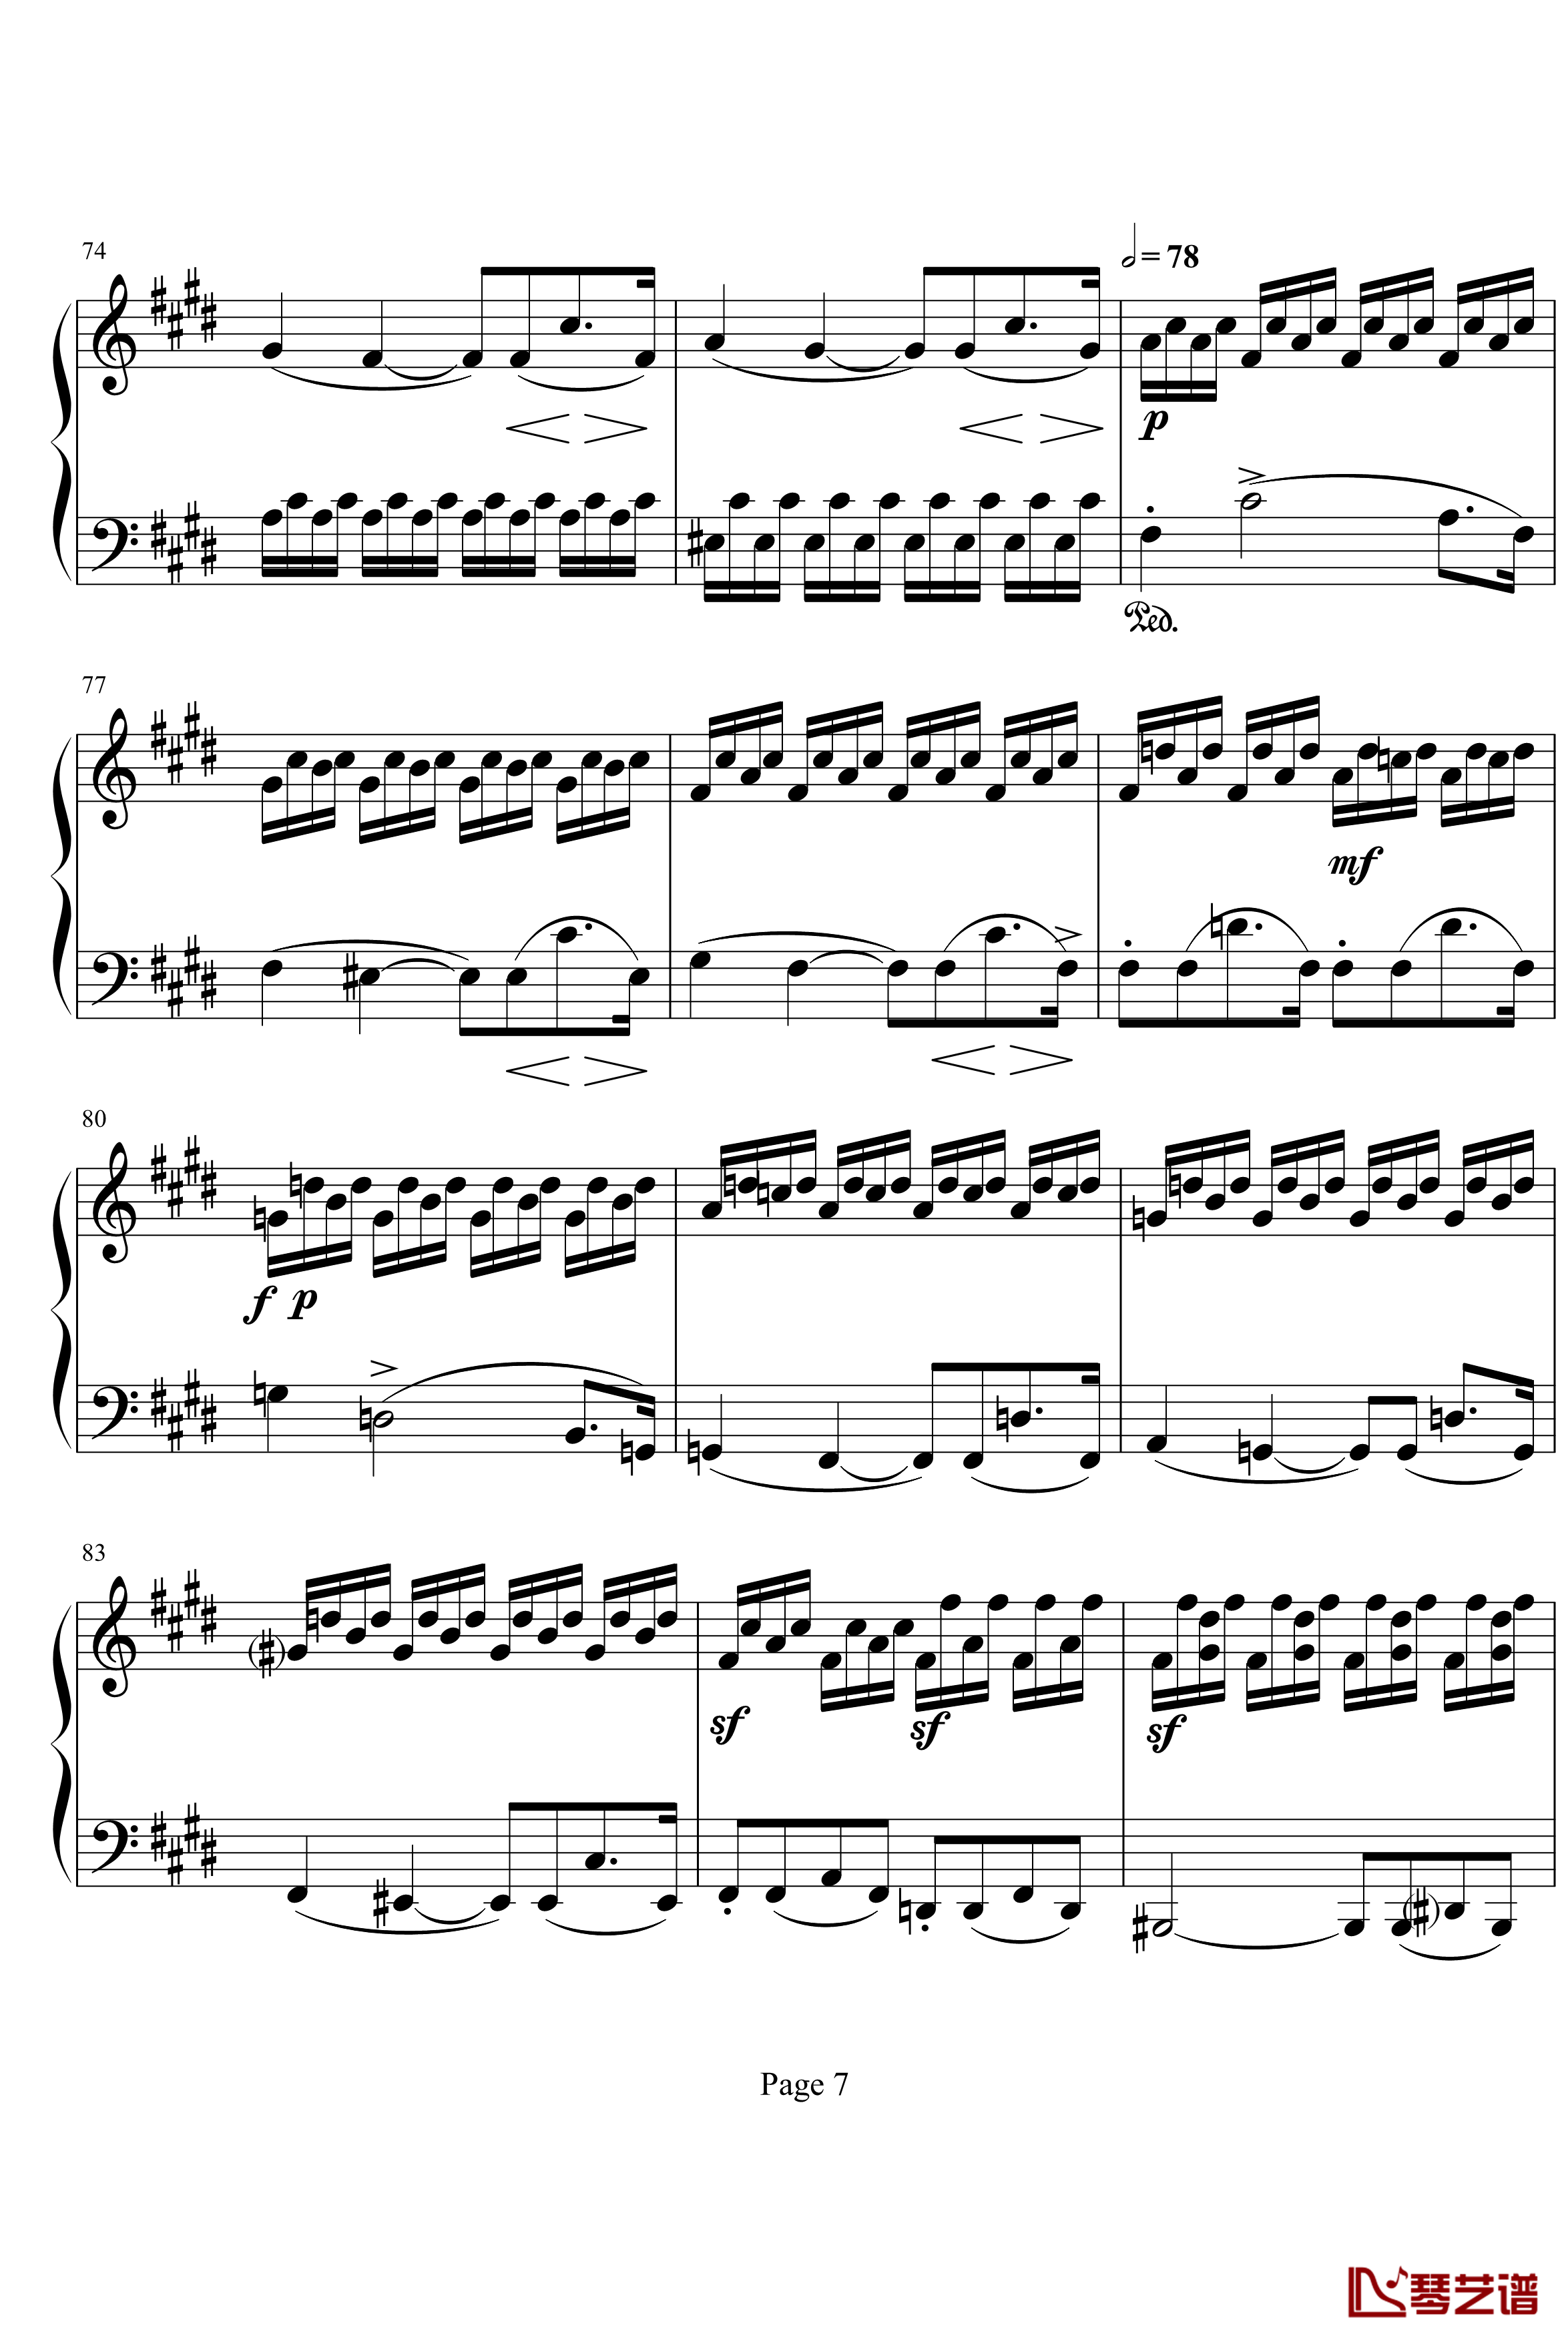 月光奏明曲钢琴谱-作品27之2-贝多芬-beethoven